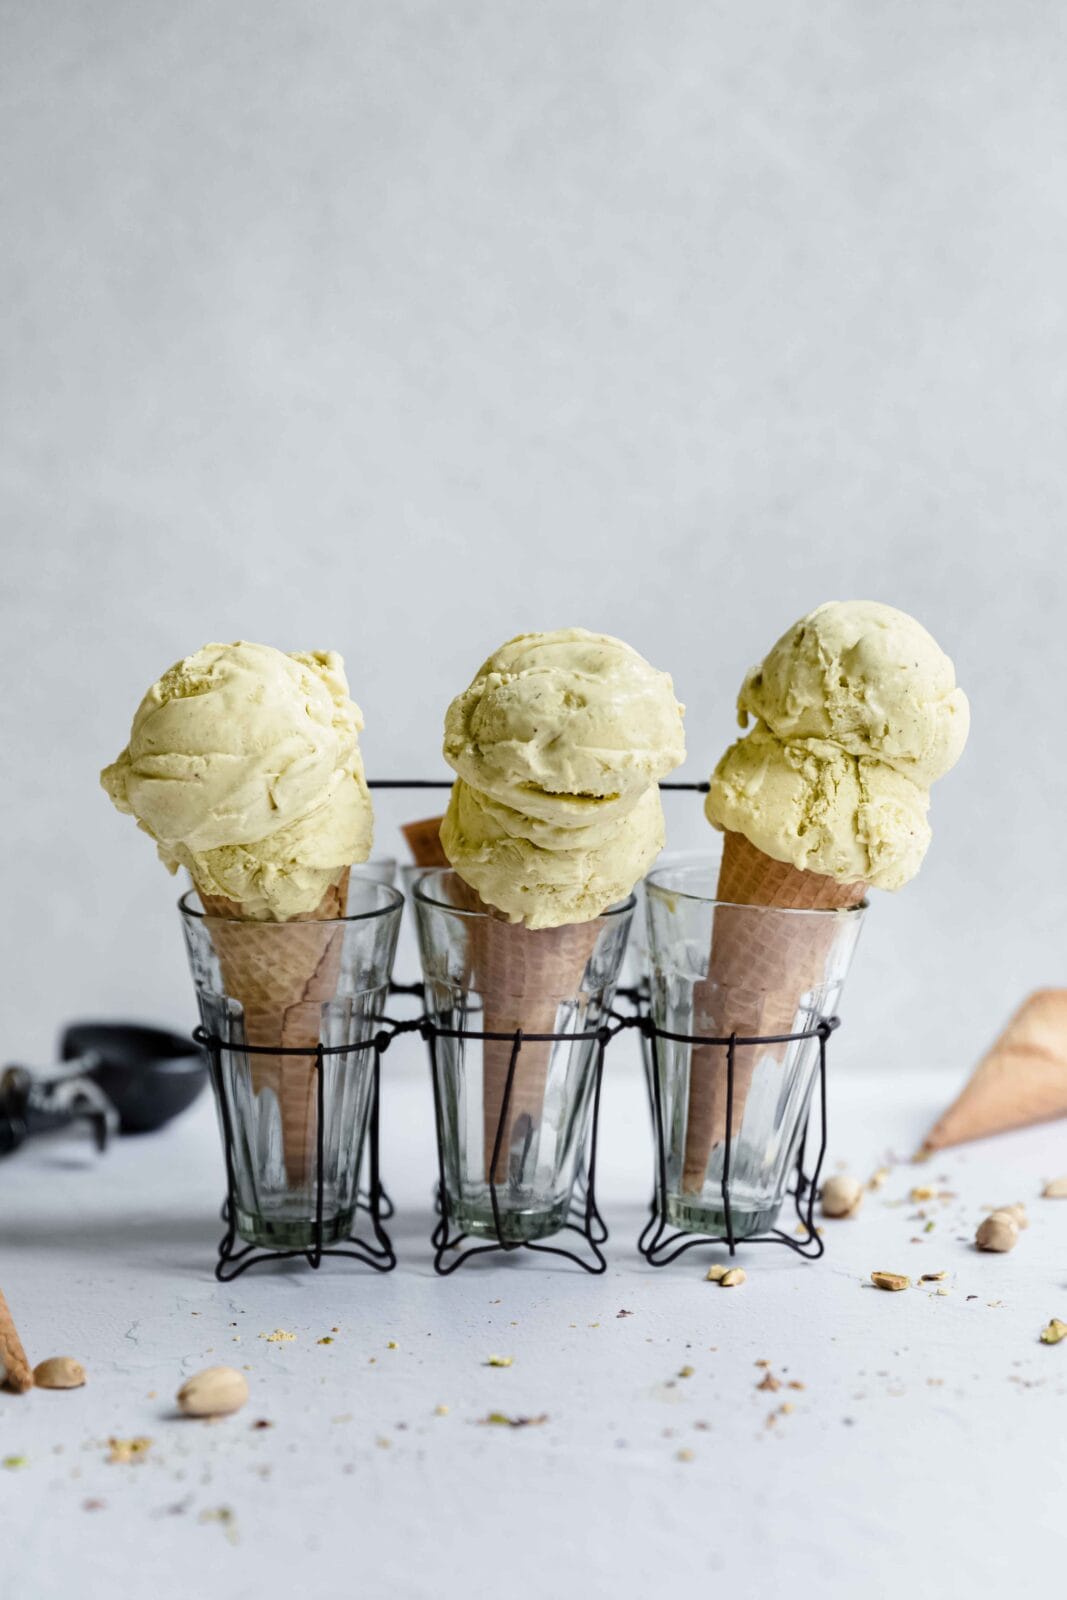 homemade pistachio ice cream in cones